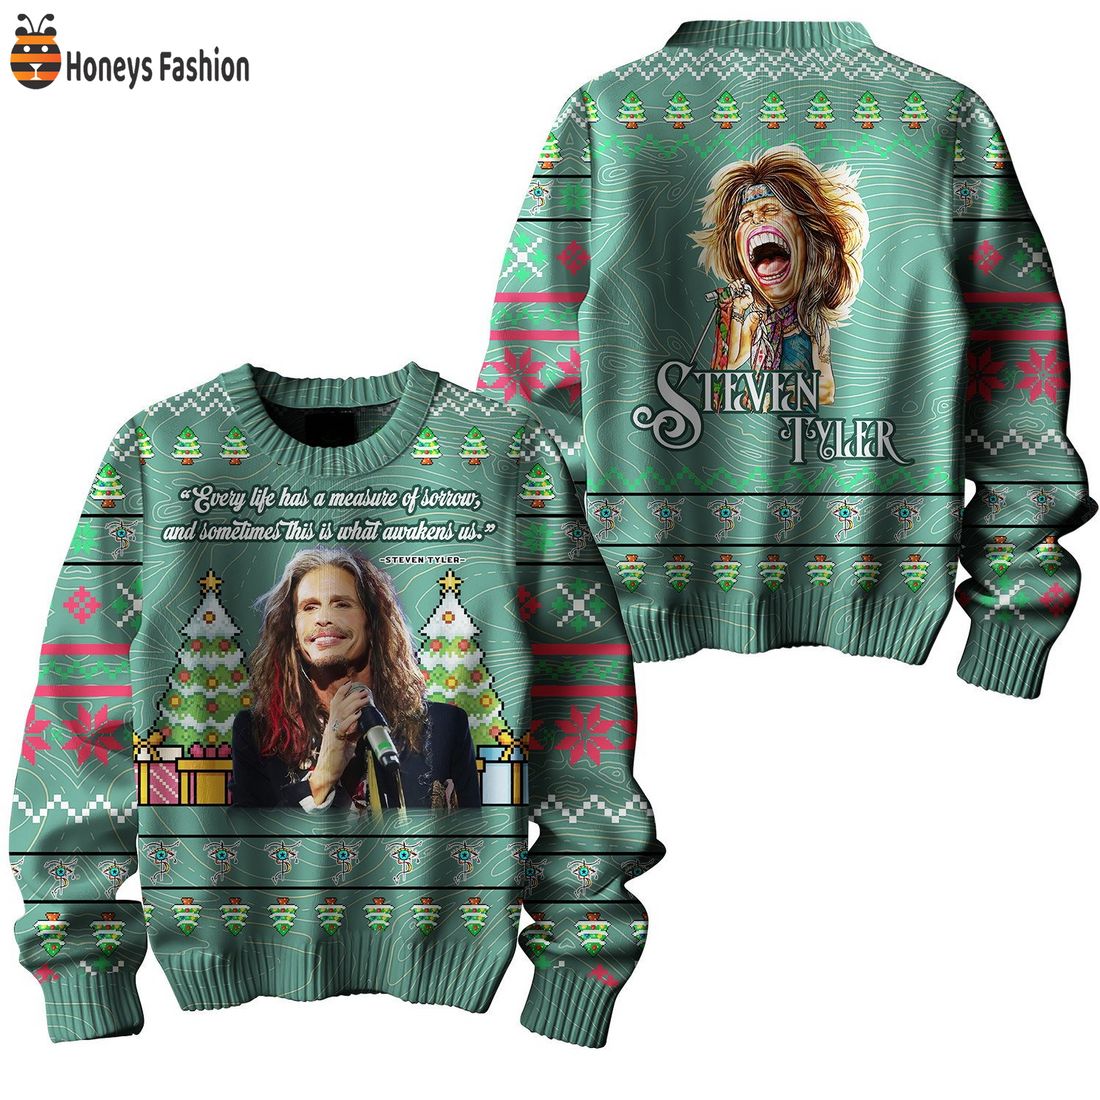 Steven Tyler Lyrics Ugly Christmas Sweater